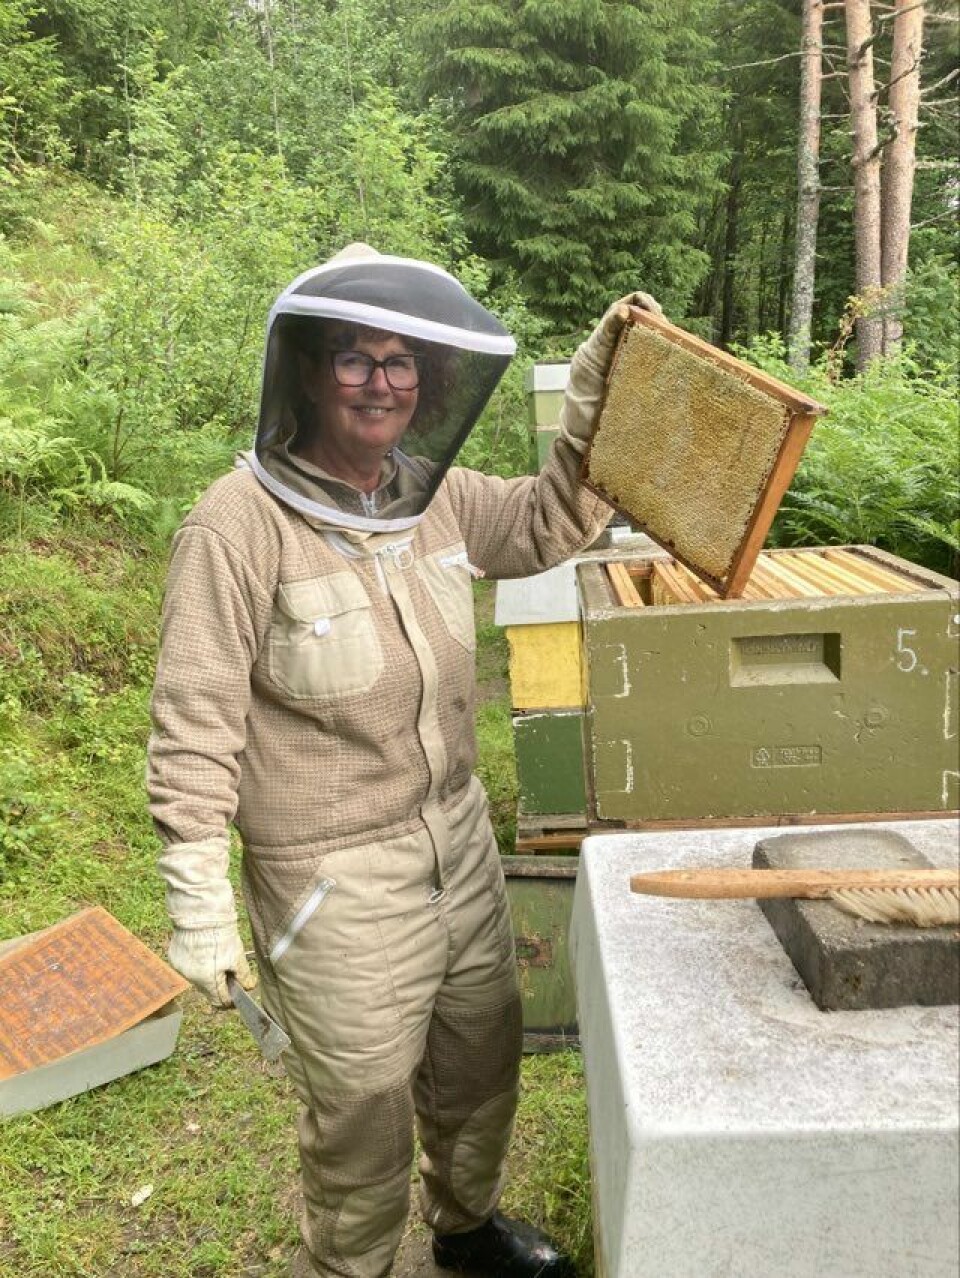 En dame henter ut honning tavler fra bikubene